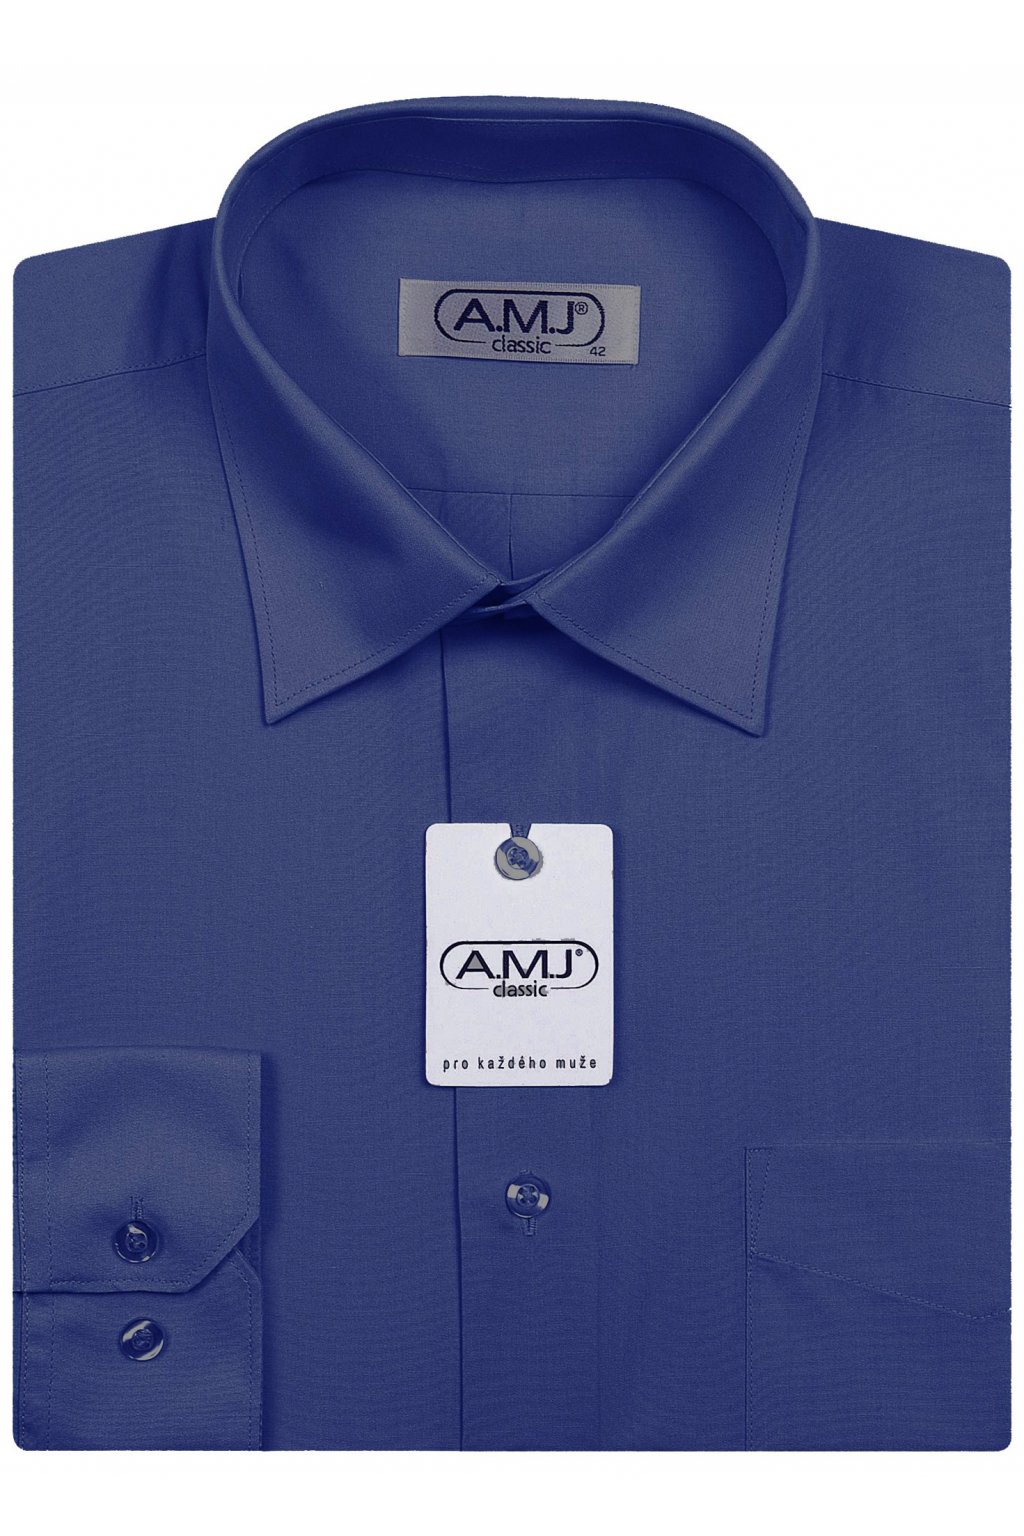 Pánská košile AMJ Comfort fit - tmavě modrá